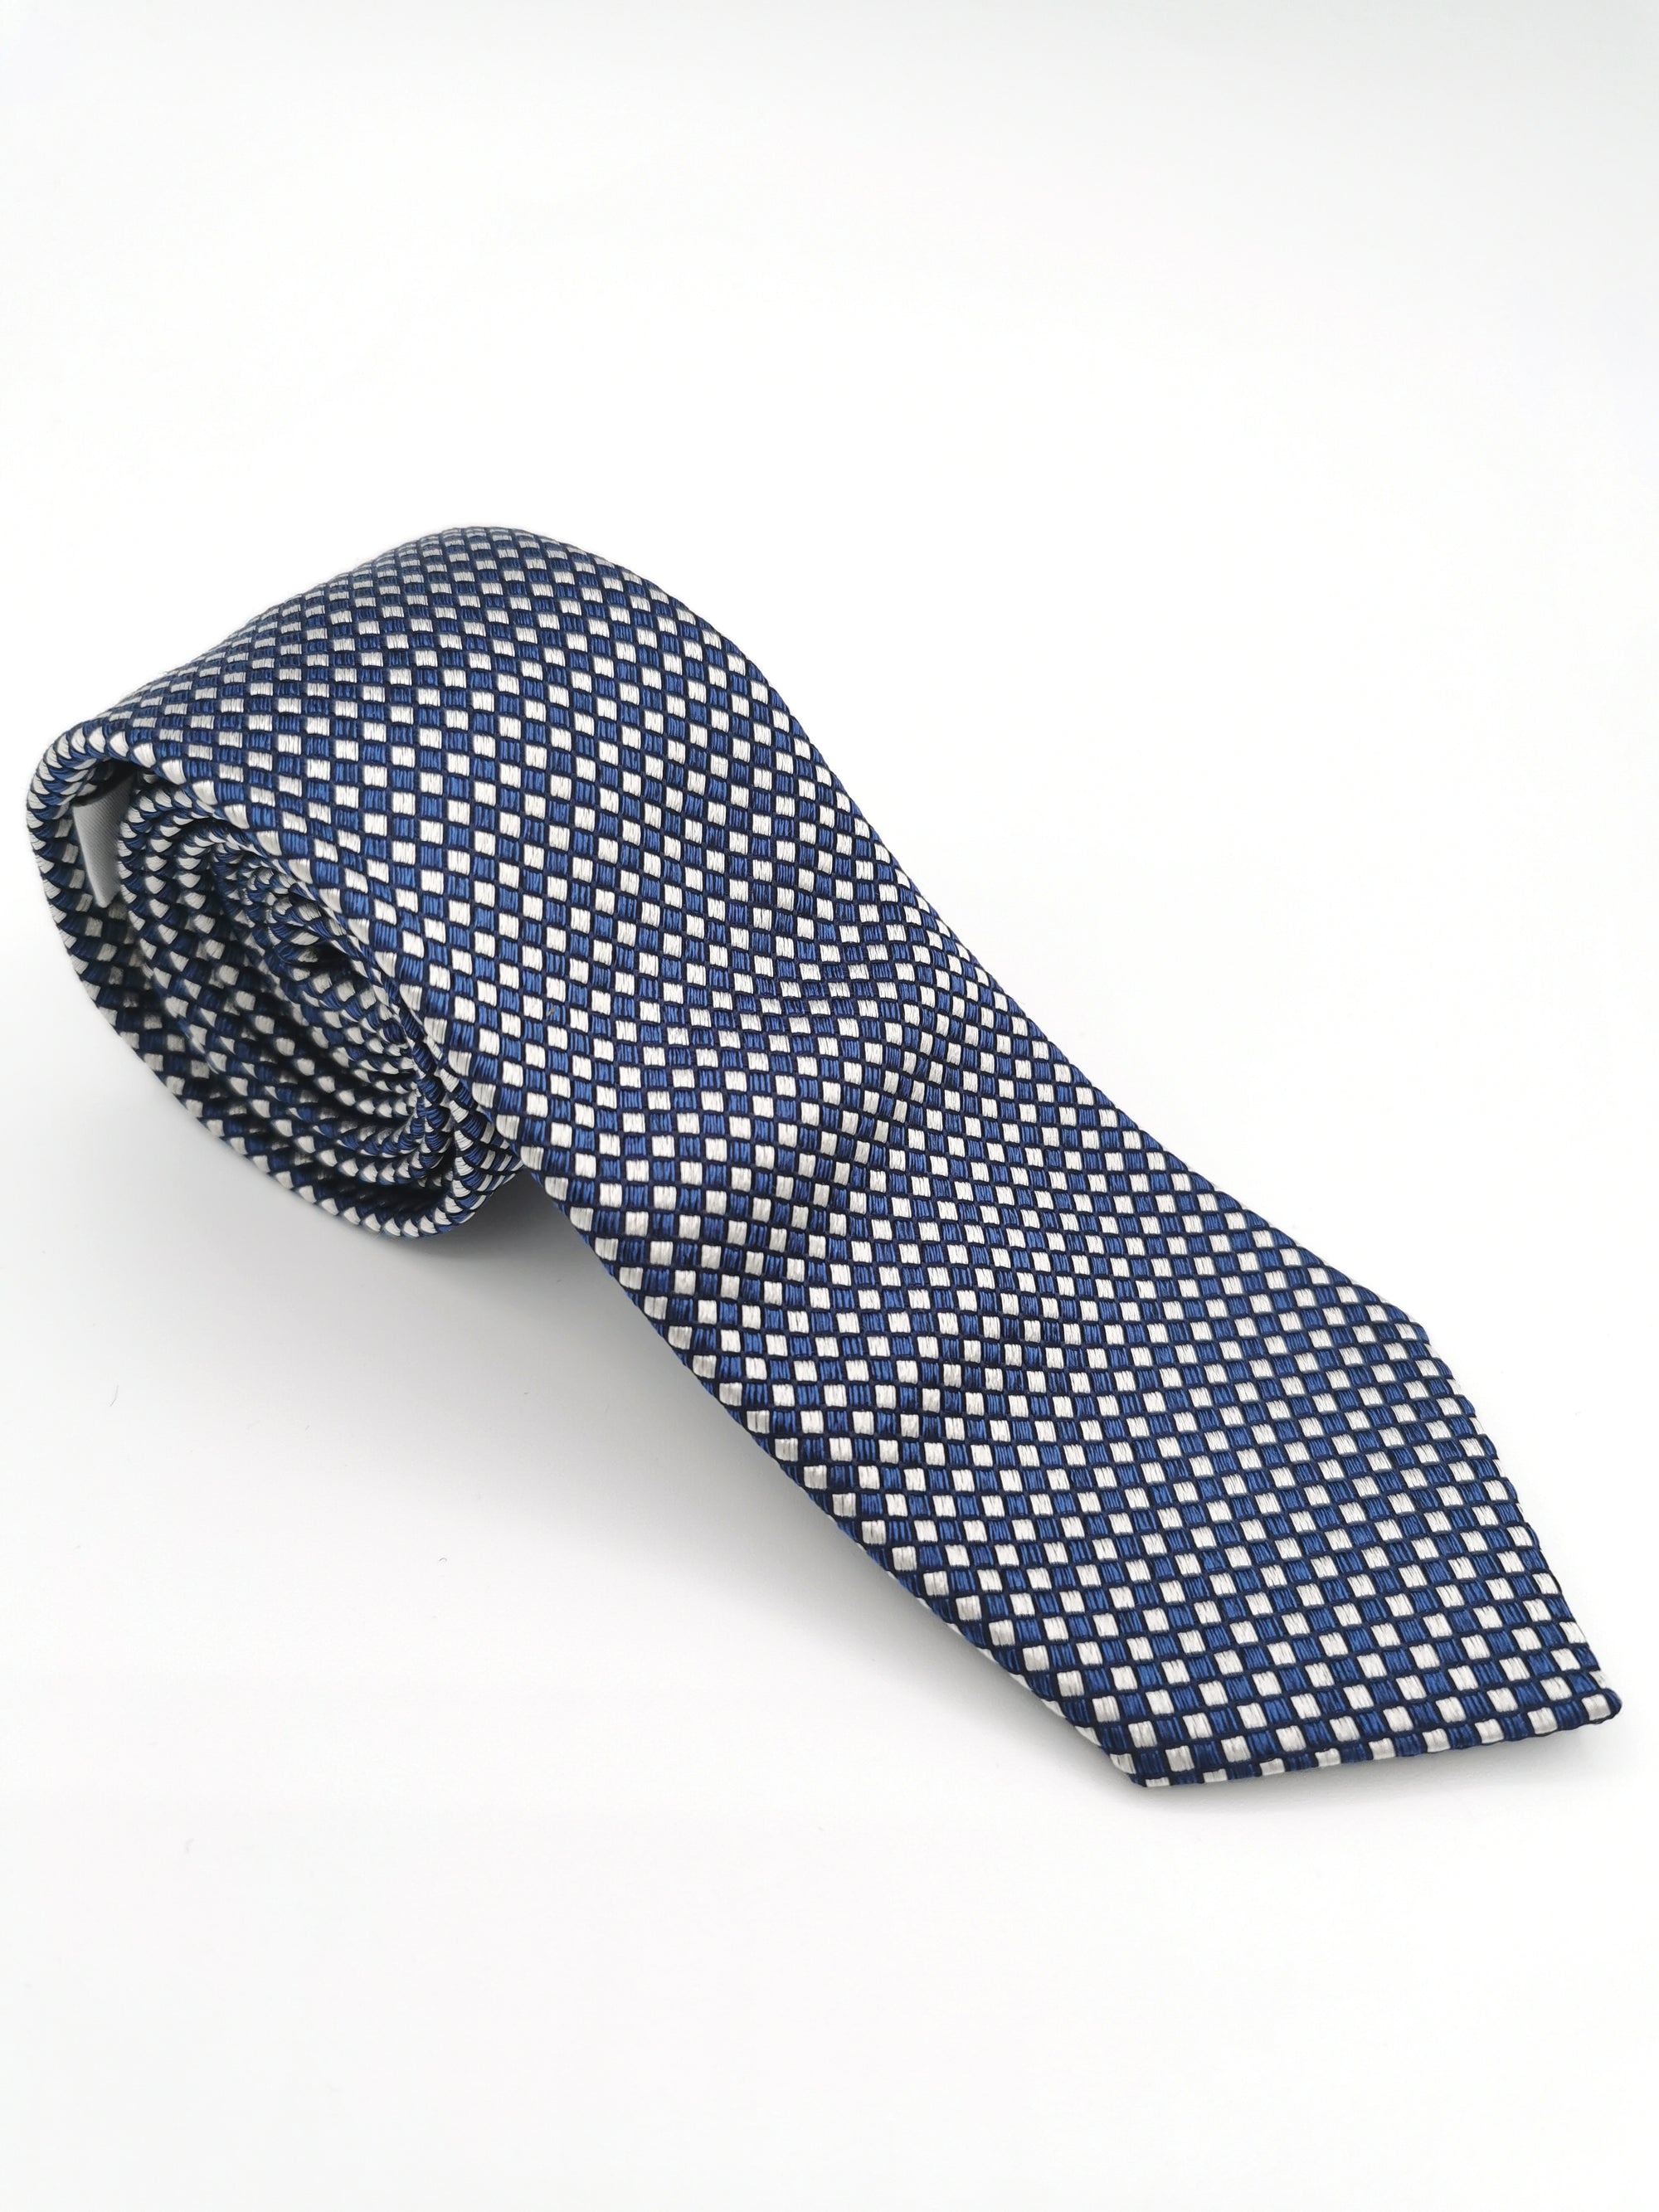 Cravate Ferala en soie à carreaux bleu et blanc